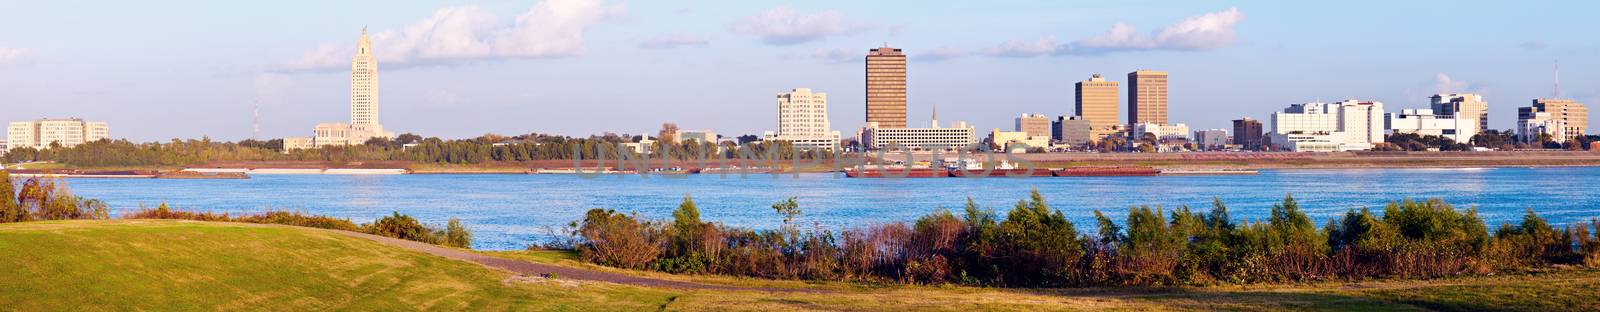 Panoramic Baton Rouge by benkrut